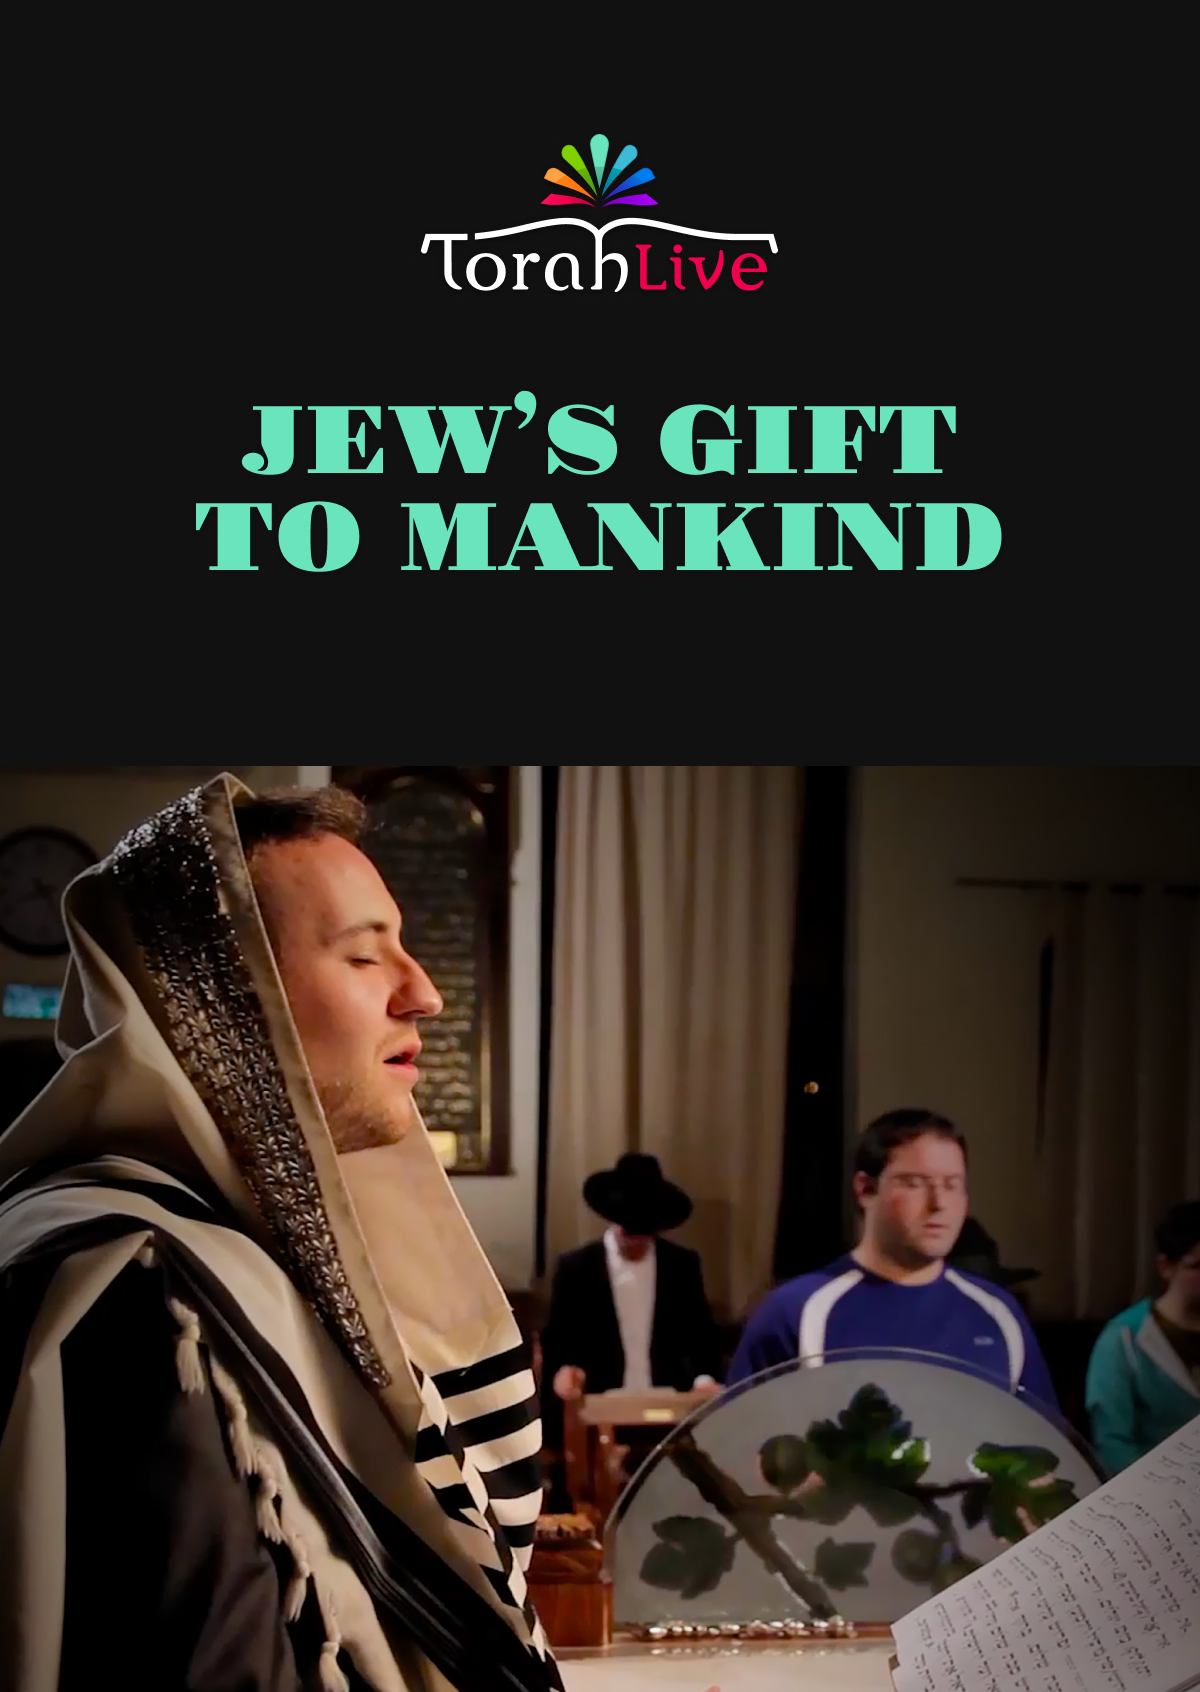 תורה בשידור חי - מתנת יהודי לאנושות (וידאו)